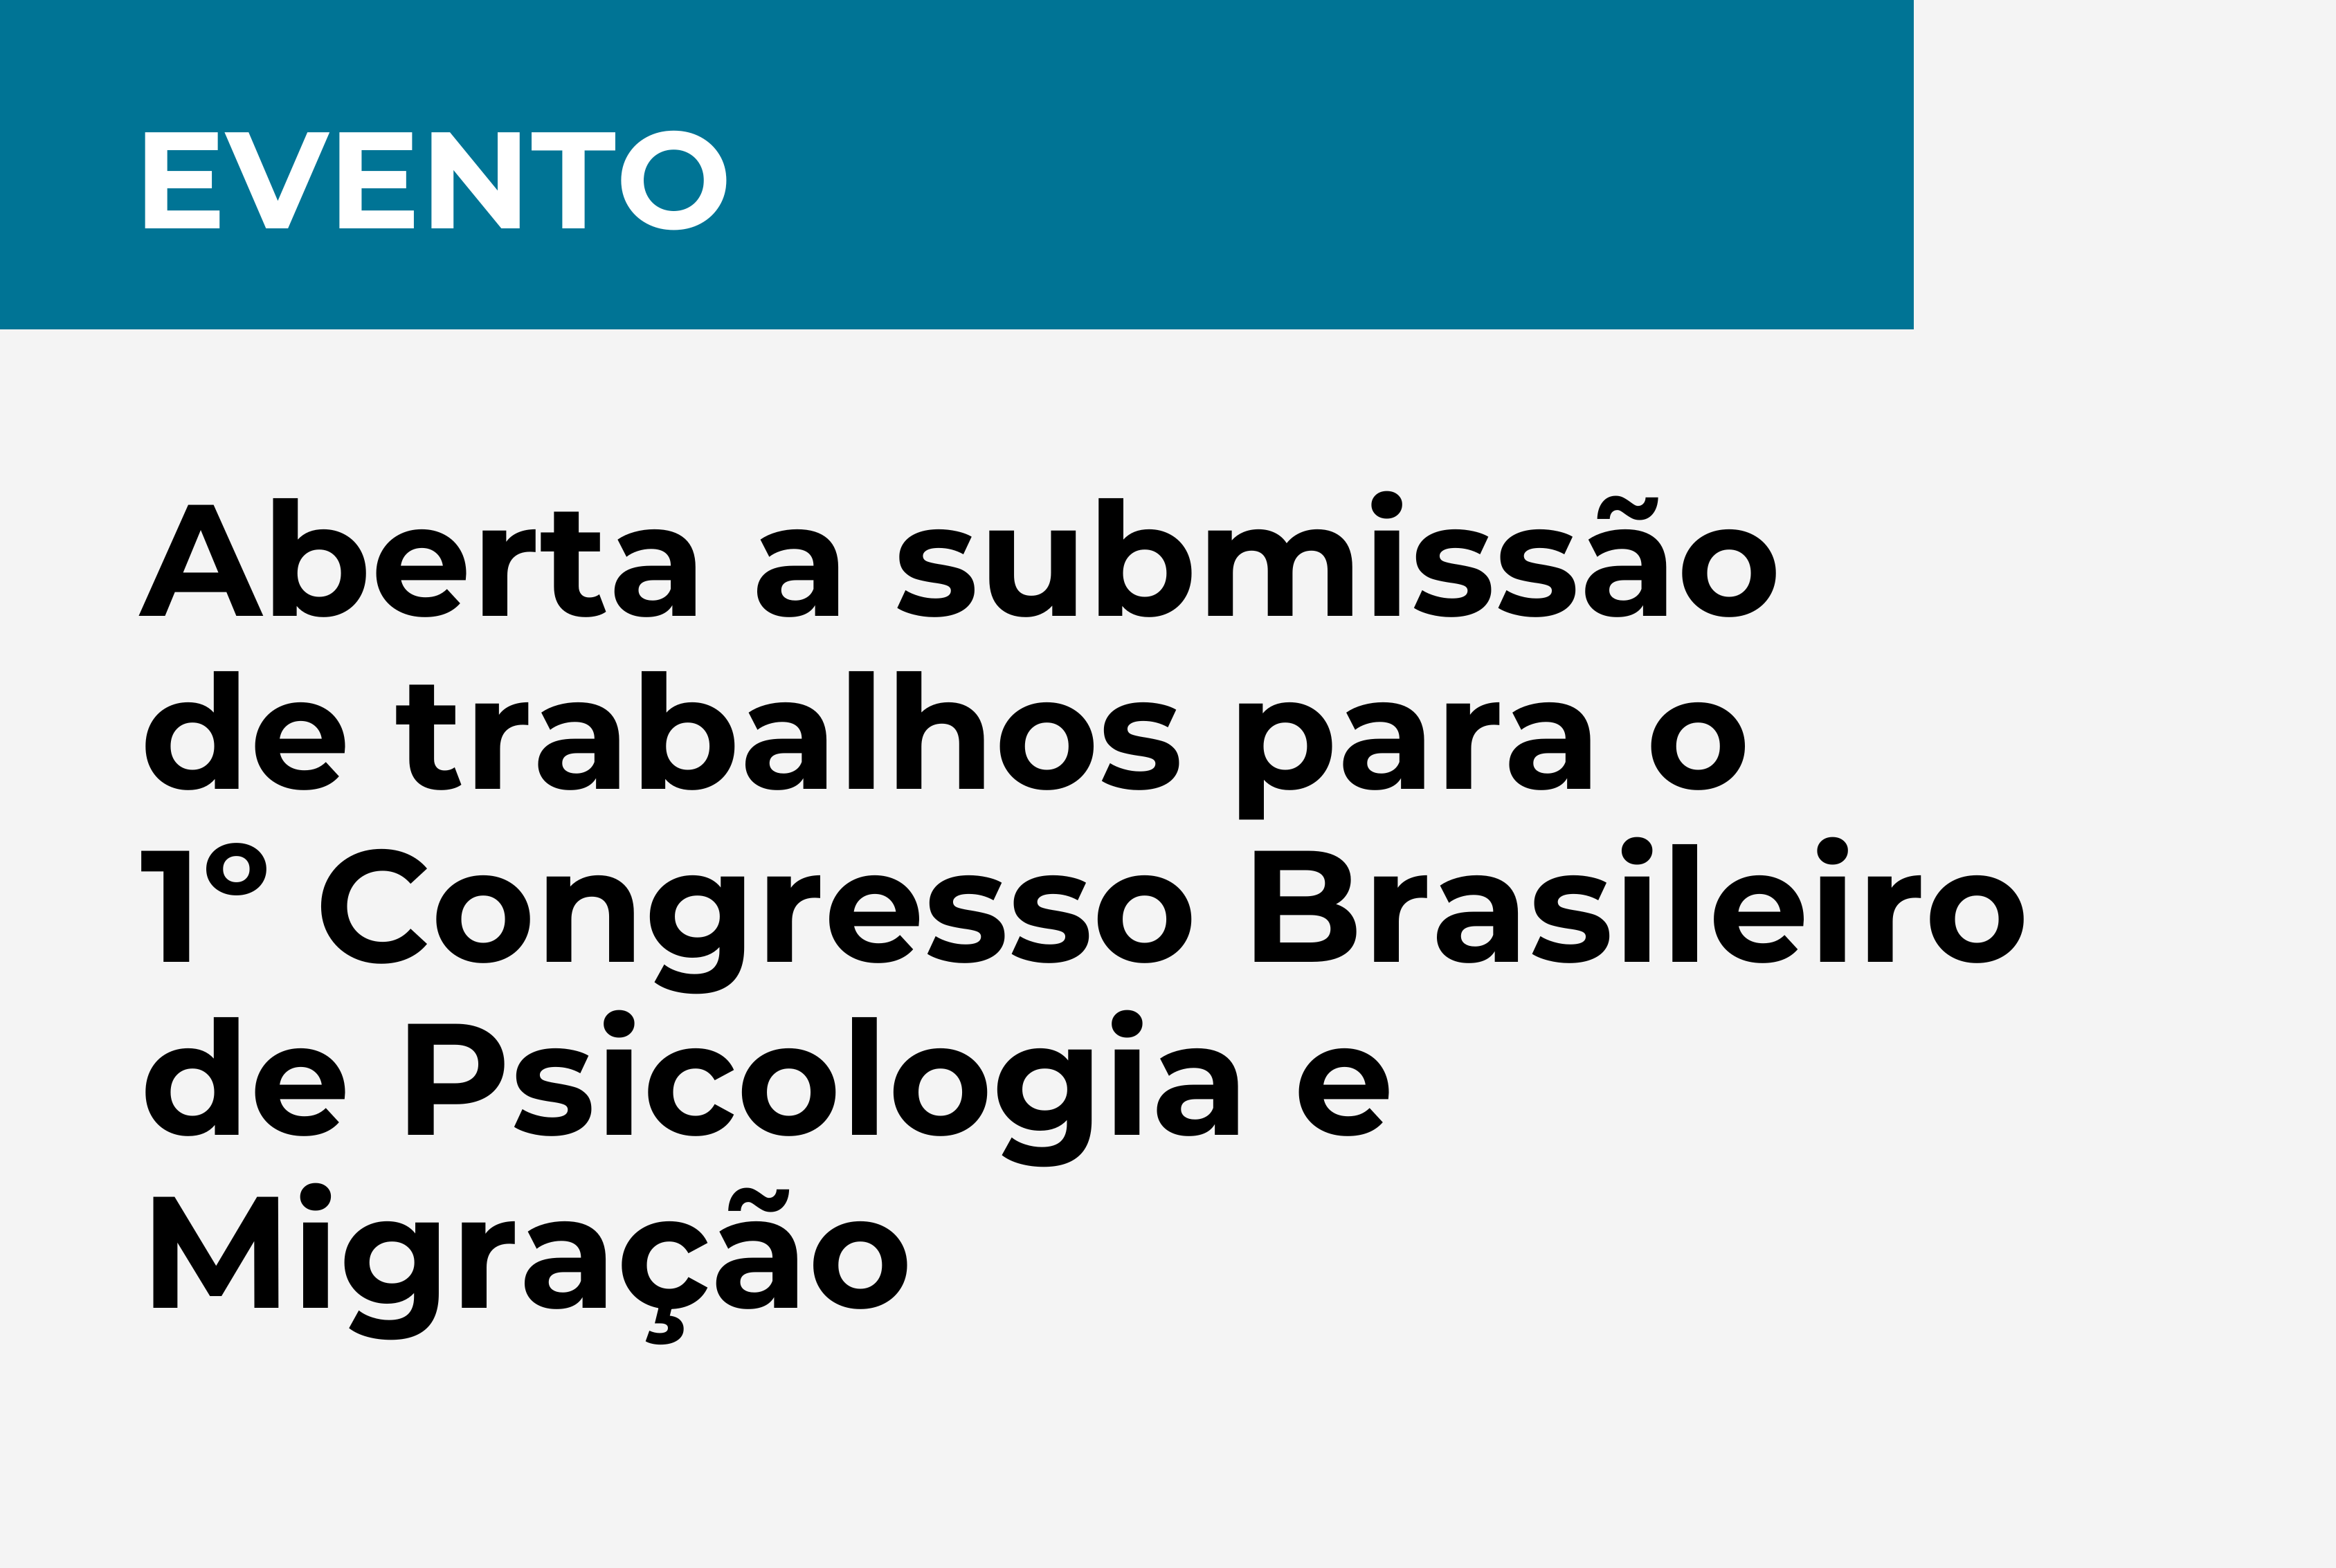 Aberta a submissão de trabalhos para o 1º Congresso Brasileiro de Psicologia e Migração